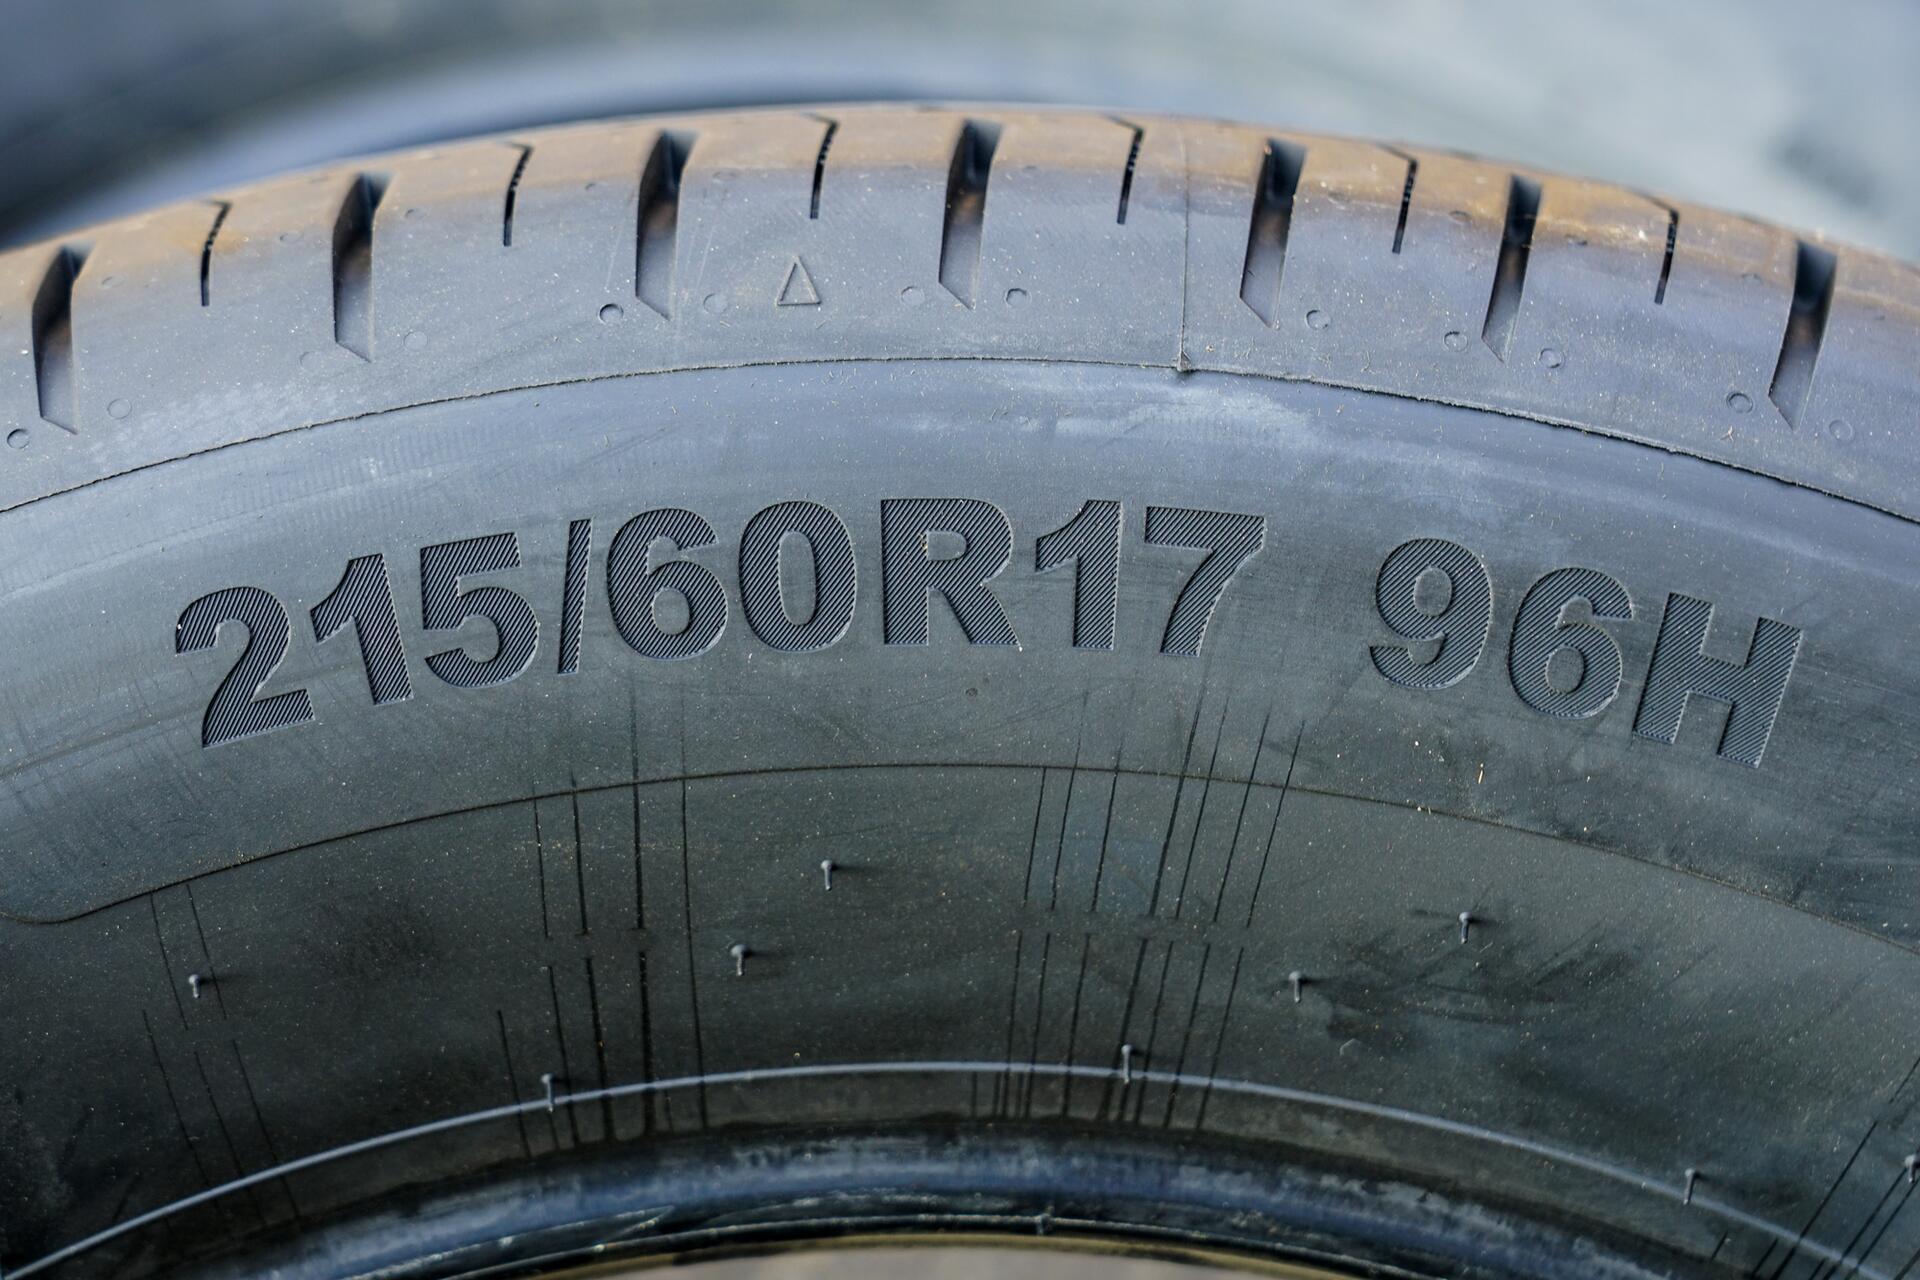 Rychlostní index pneu - tabulka